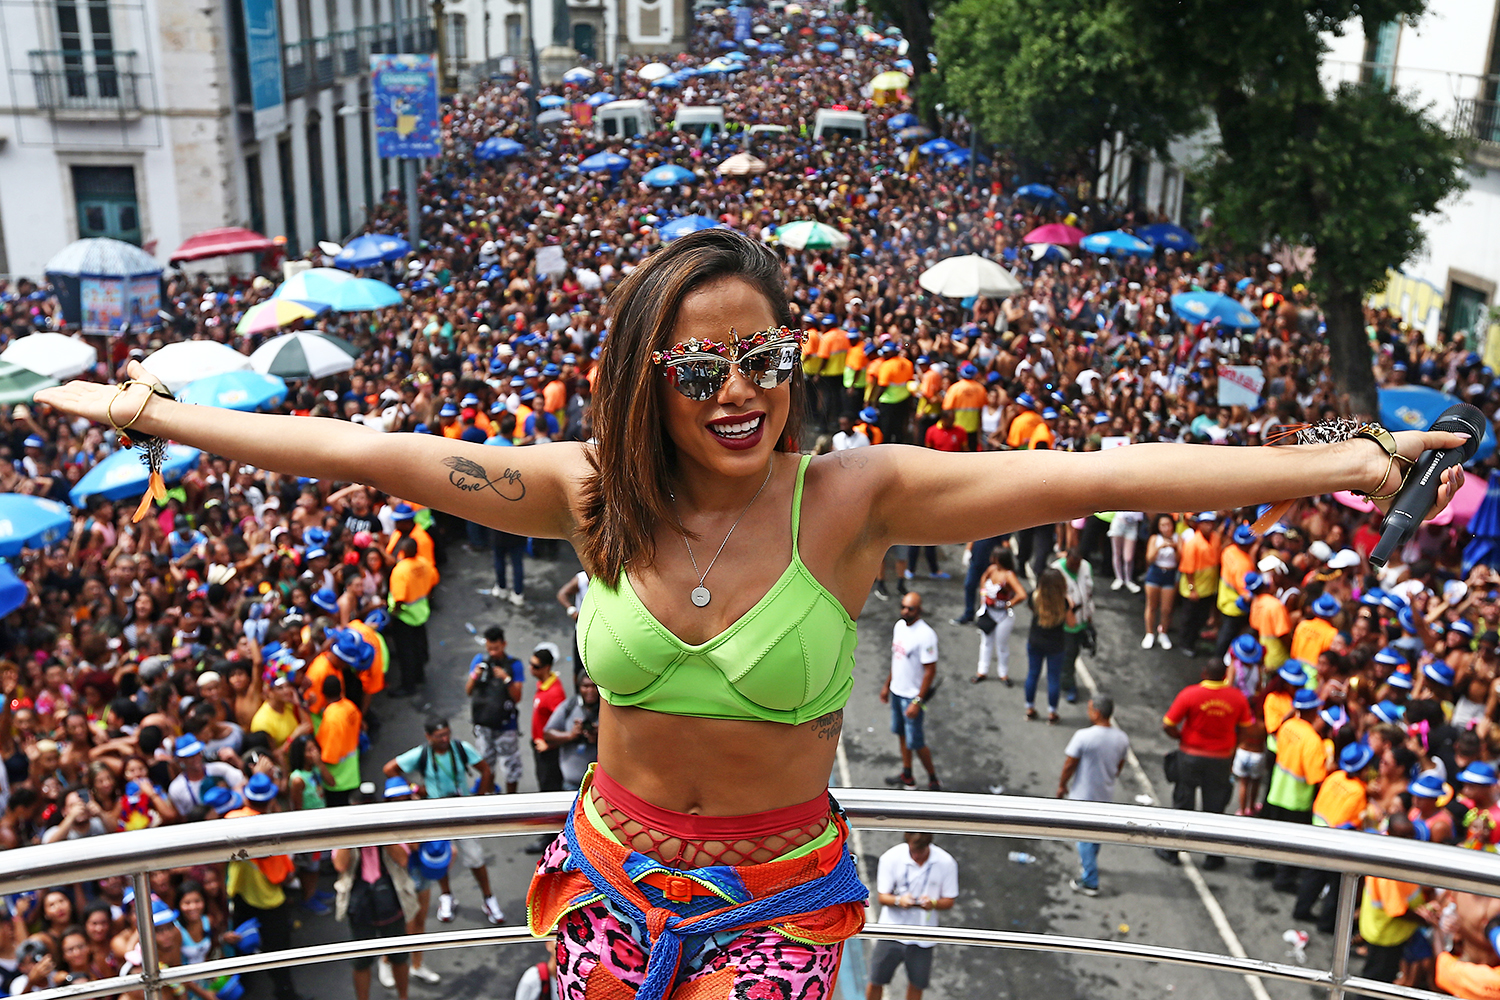 Carnaval é a arma do Rio Open